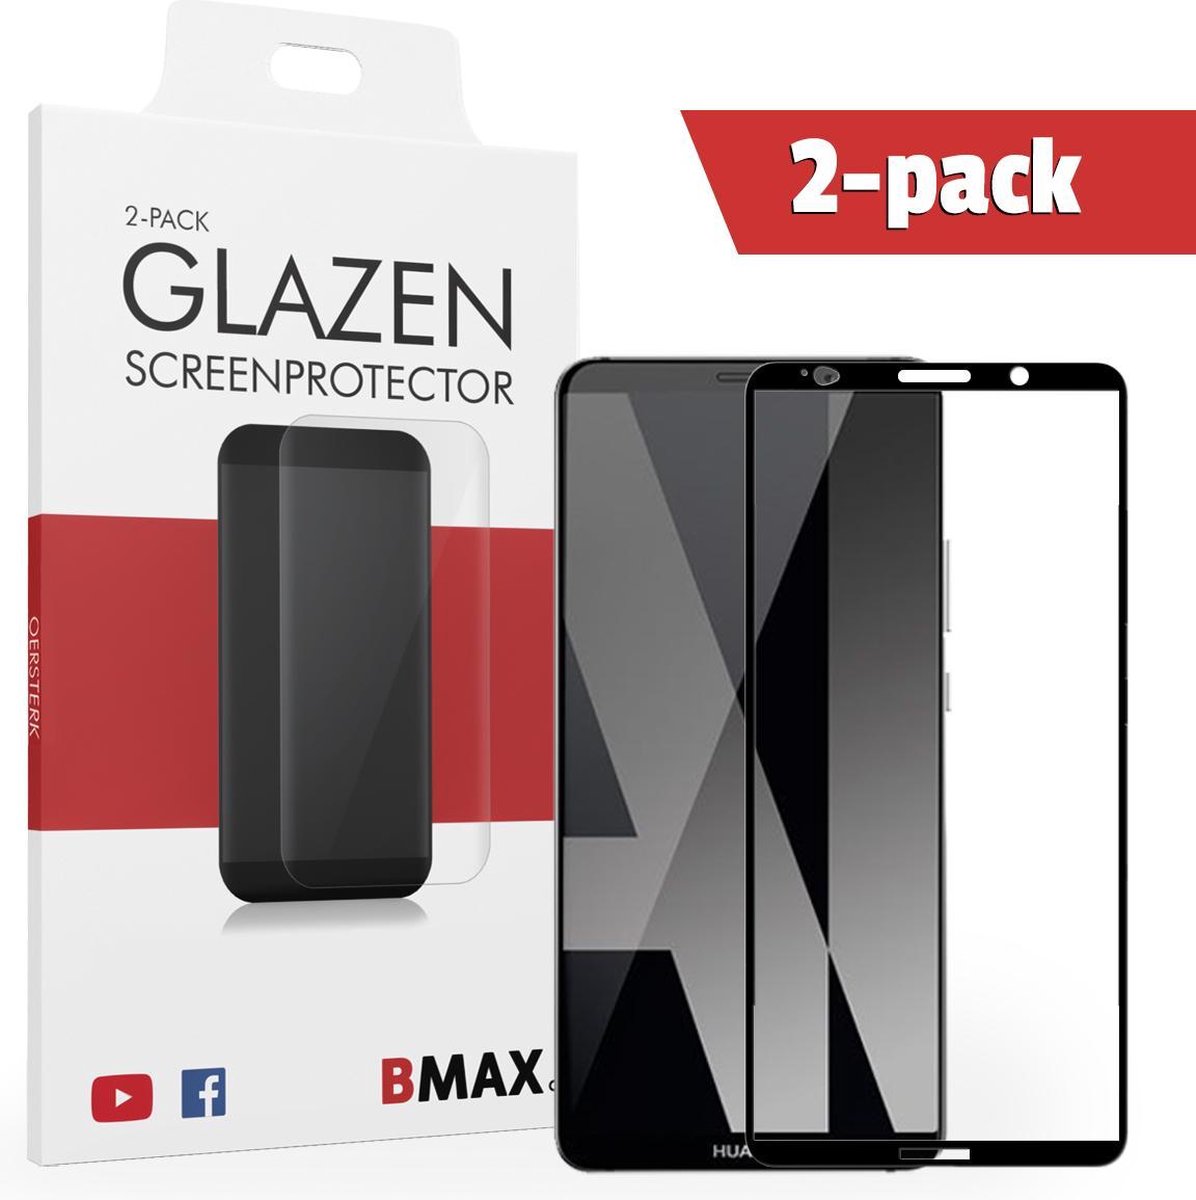 2-pack Bmax Huawei Mate 10 Pro Screenprotector - Glass - Full Cover 2.5d - Black